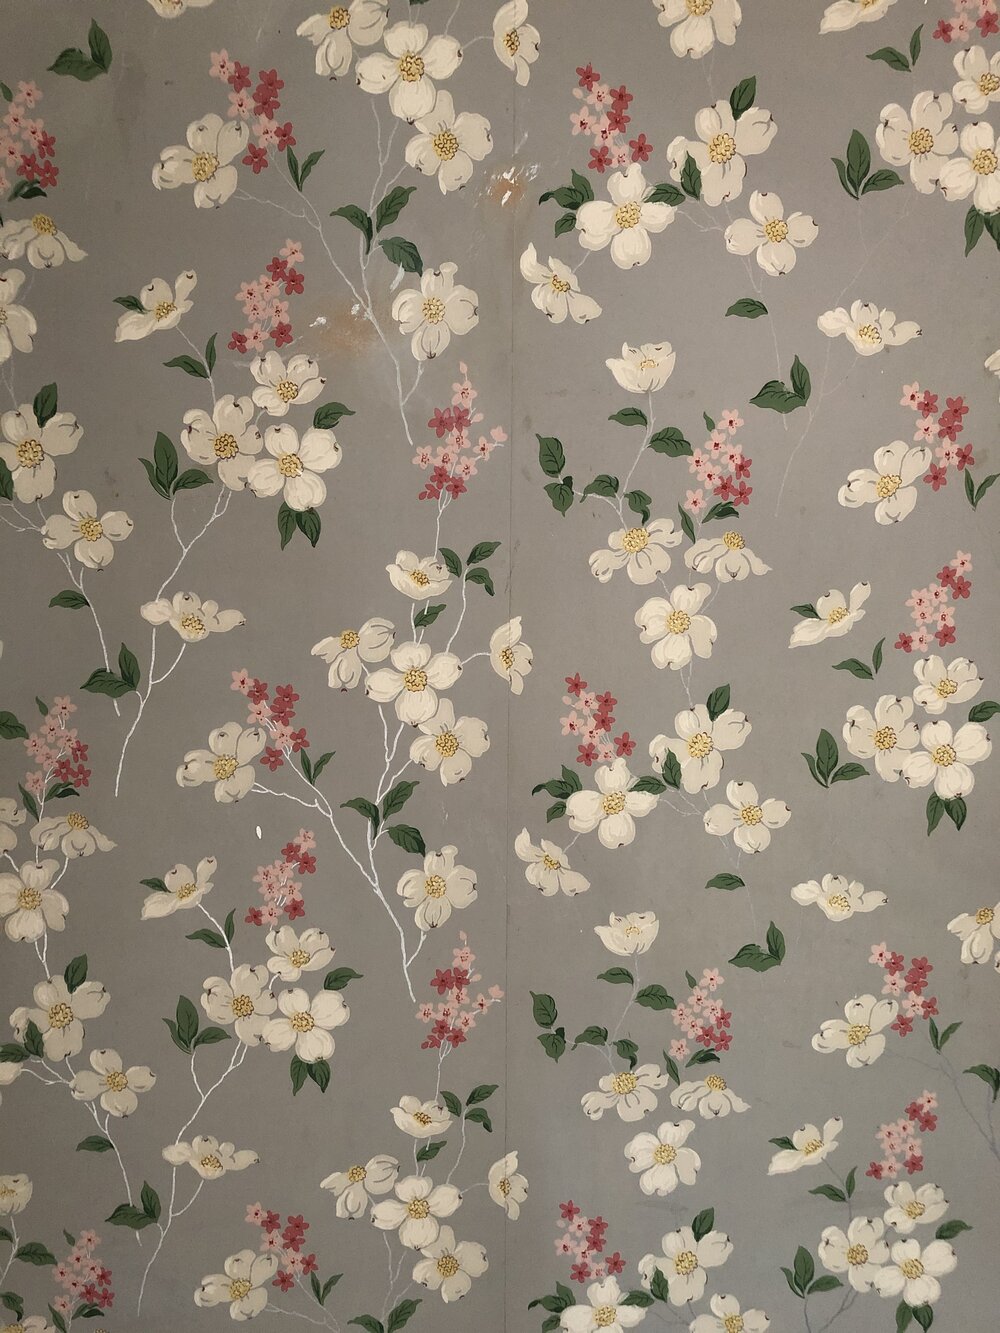 vintage floral wallpaper.jpg